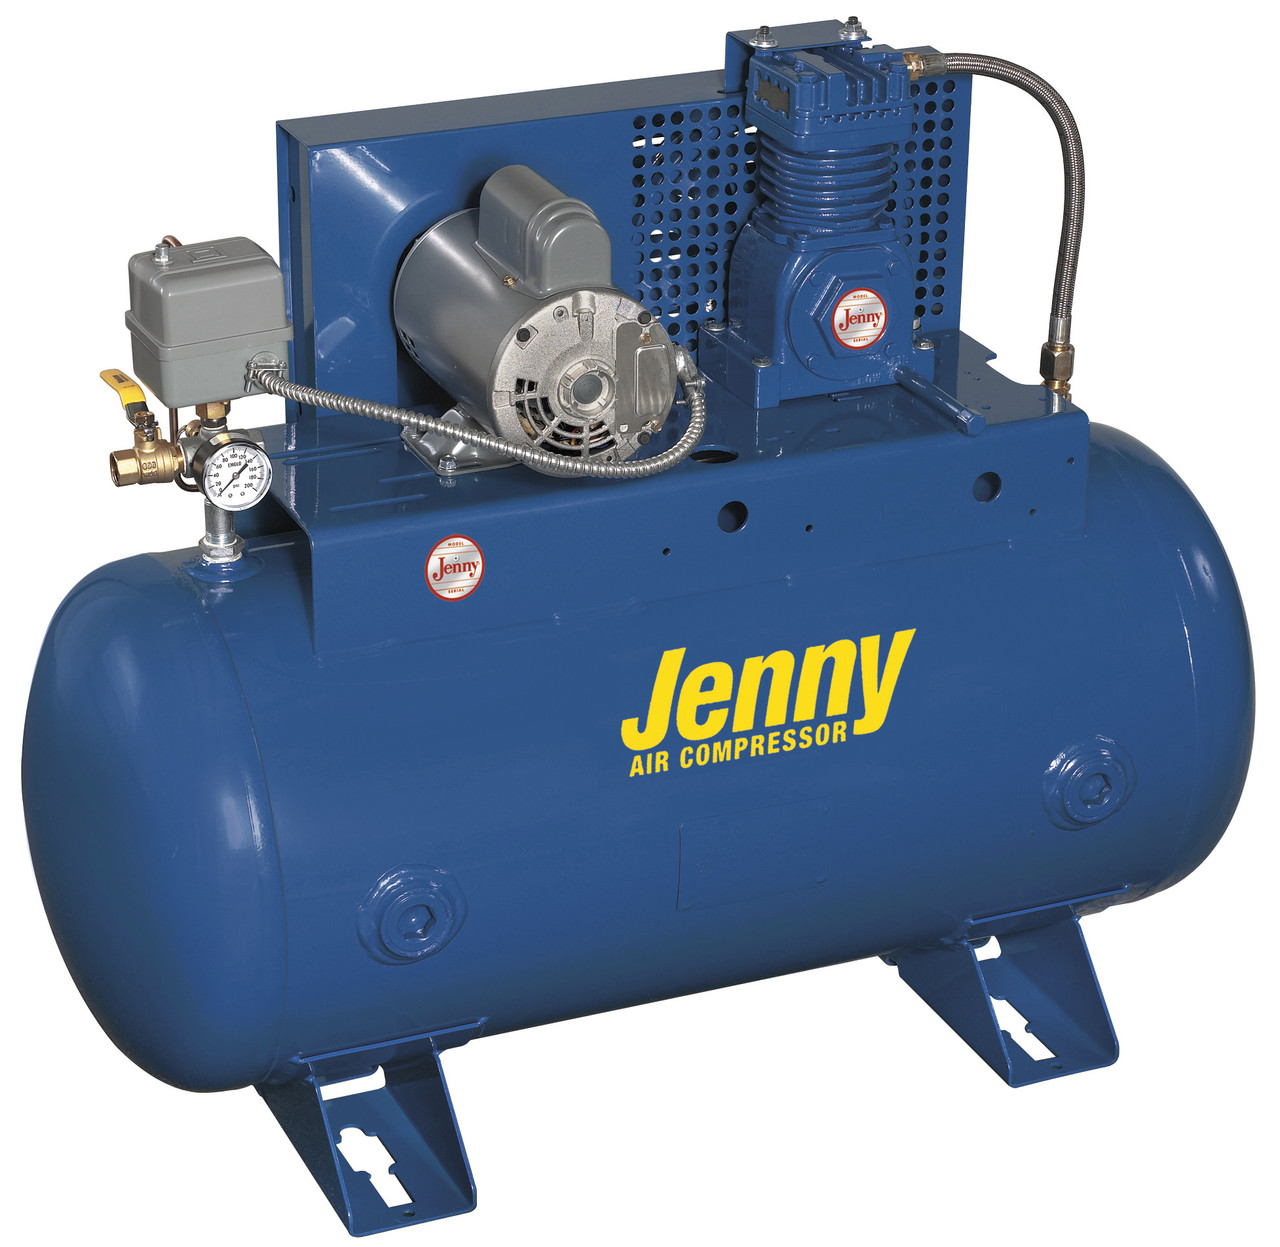 Jenny G3S-30UMS 3 HP 208 Volt Single Phase Single Stage Fire Sprinkler System Air Compressor